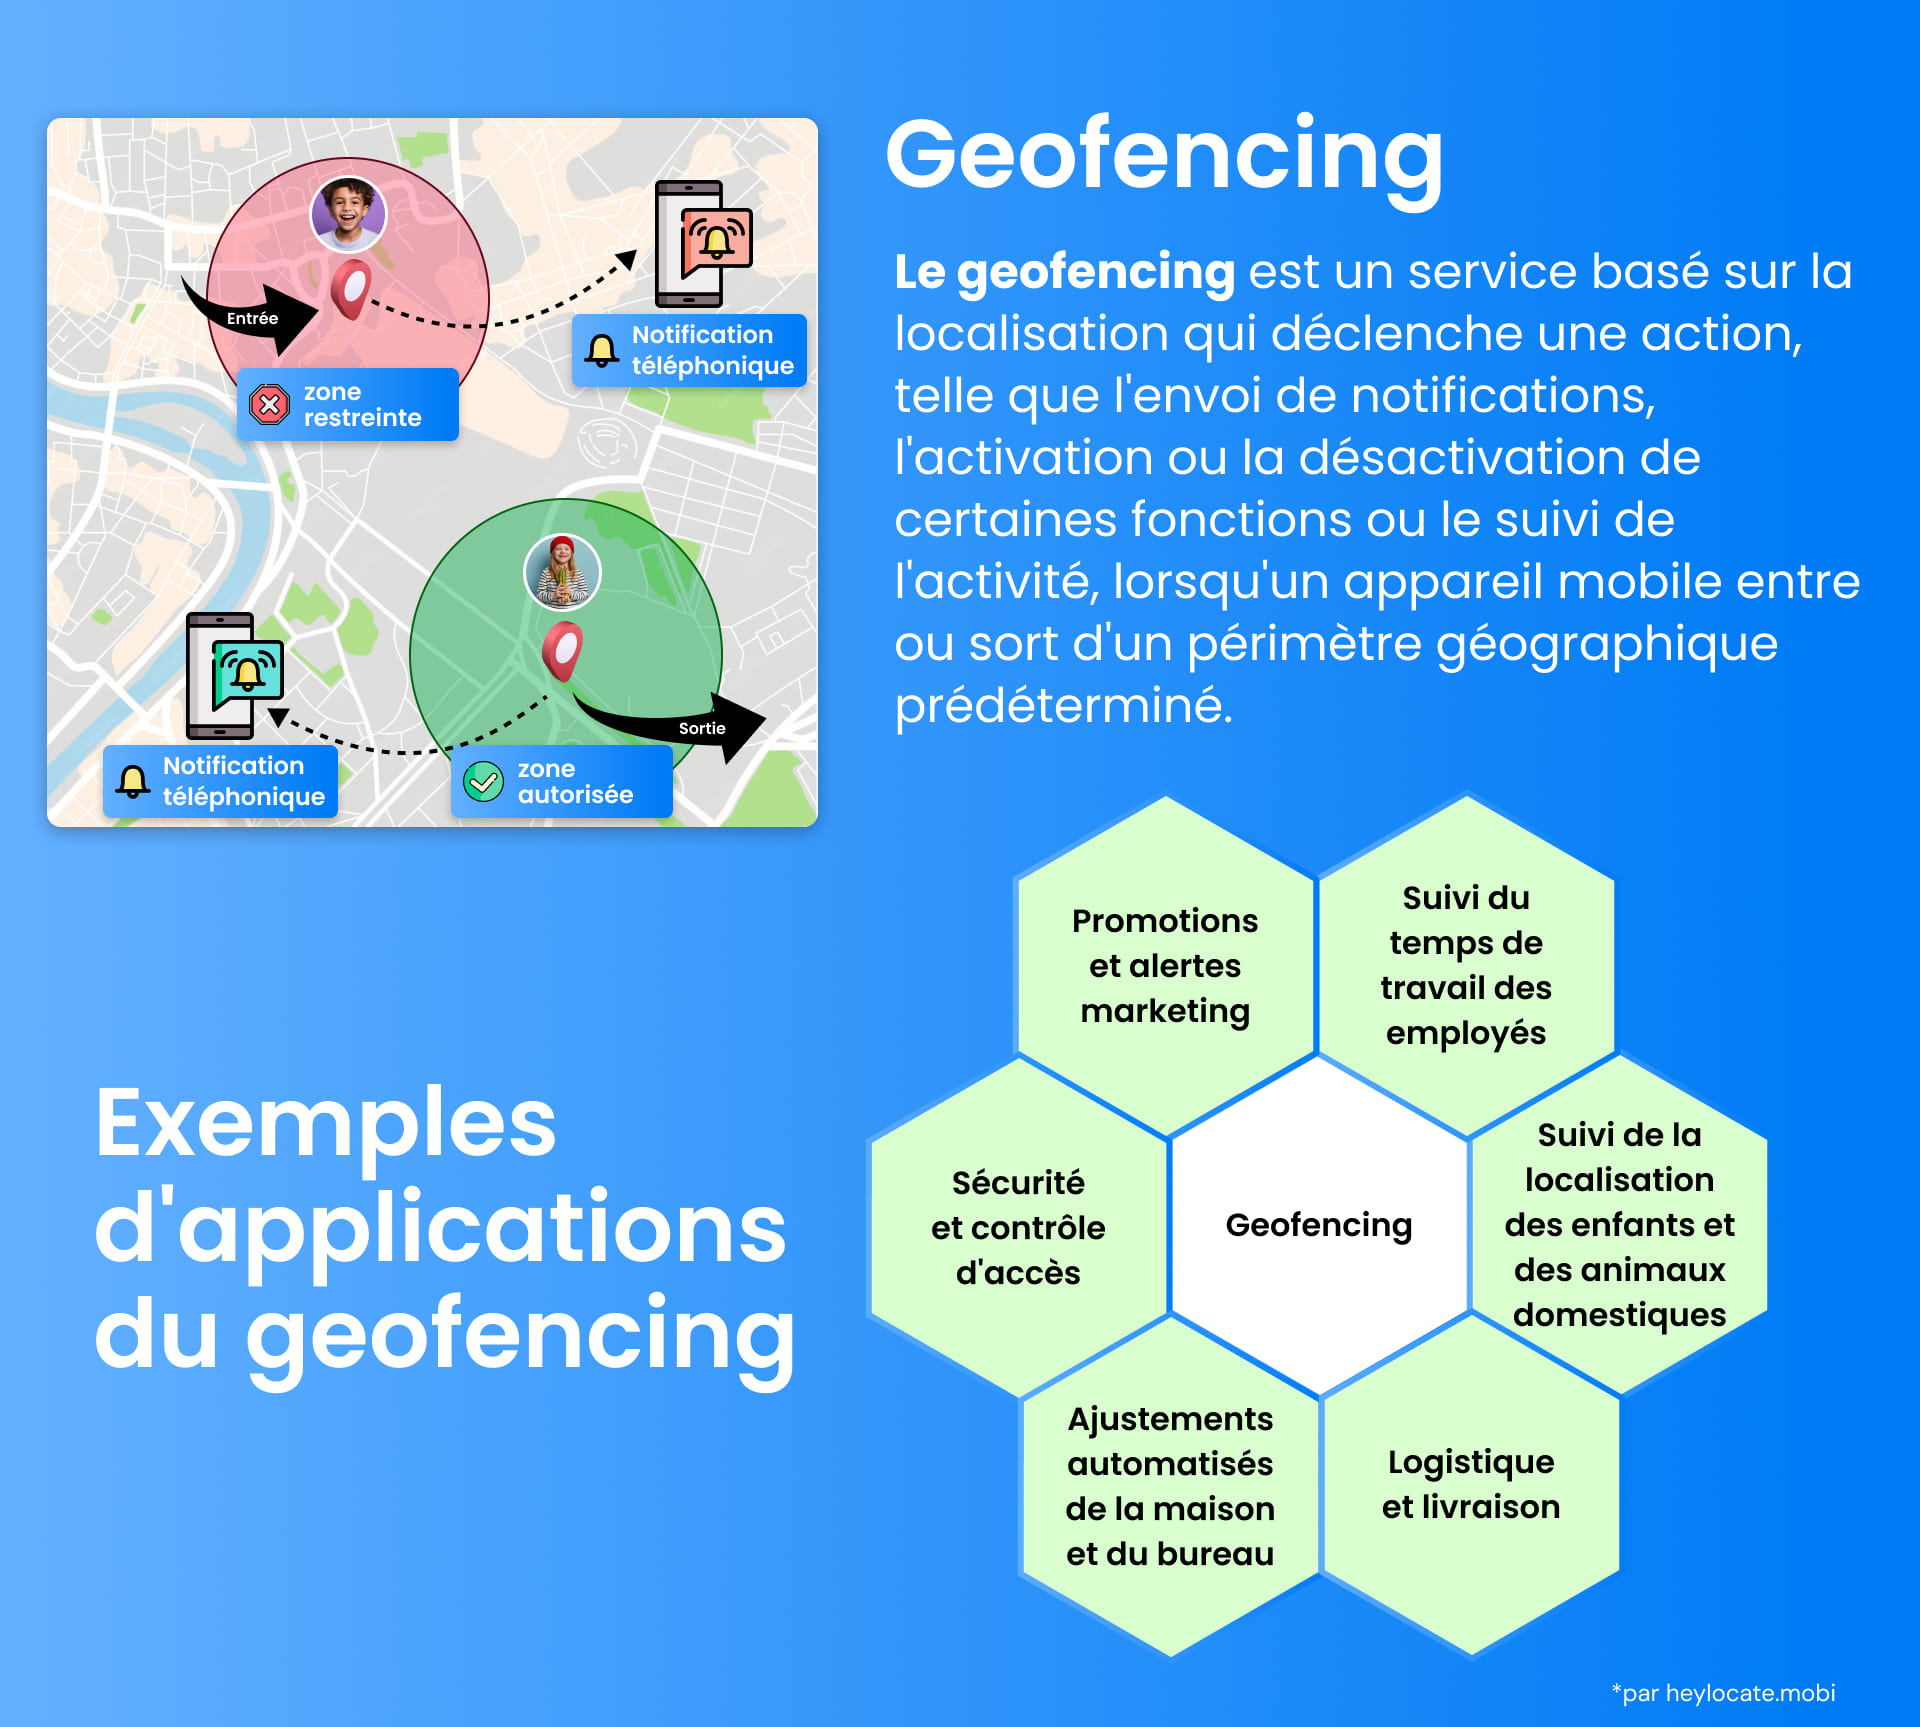 Infographie expliquant le géofencing avec des repères visuels pour les zones restreintes et autorisées, et des exemples de cas d'utilisation